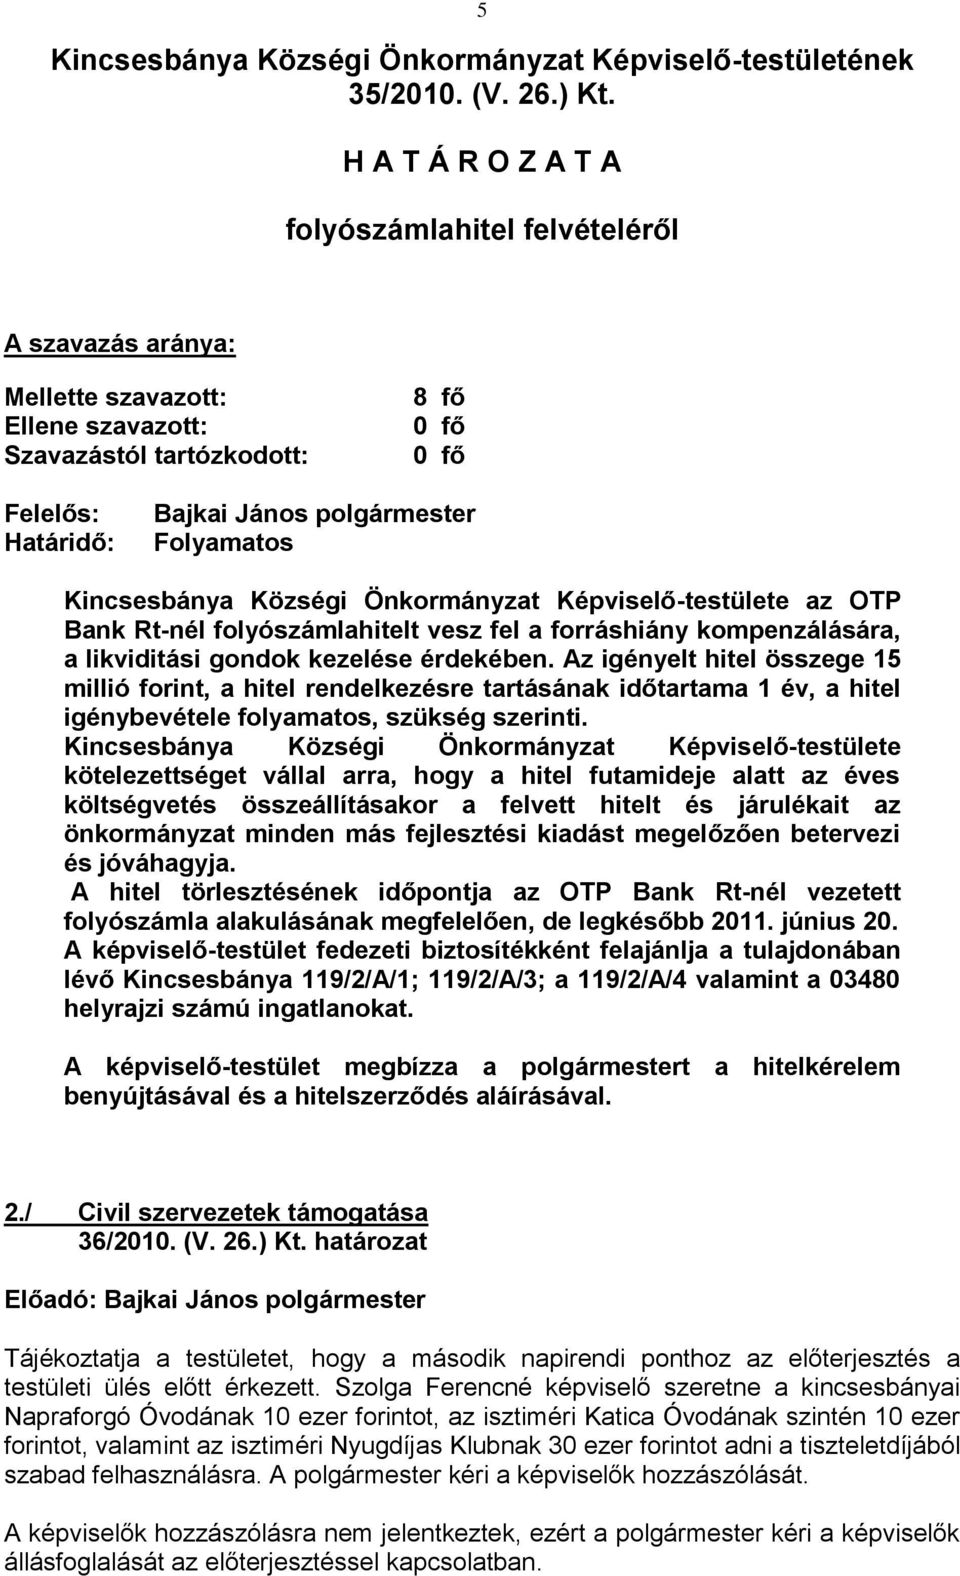 Kincsesbánya Községi Önkormányzat Képviselő-testülete az OTP Bank Rt-nél folyószámlahitelt vesz fel a forráshiány kompenzálására, a likviditási gondok kezelése érdekében.